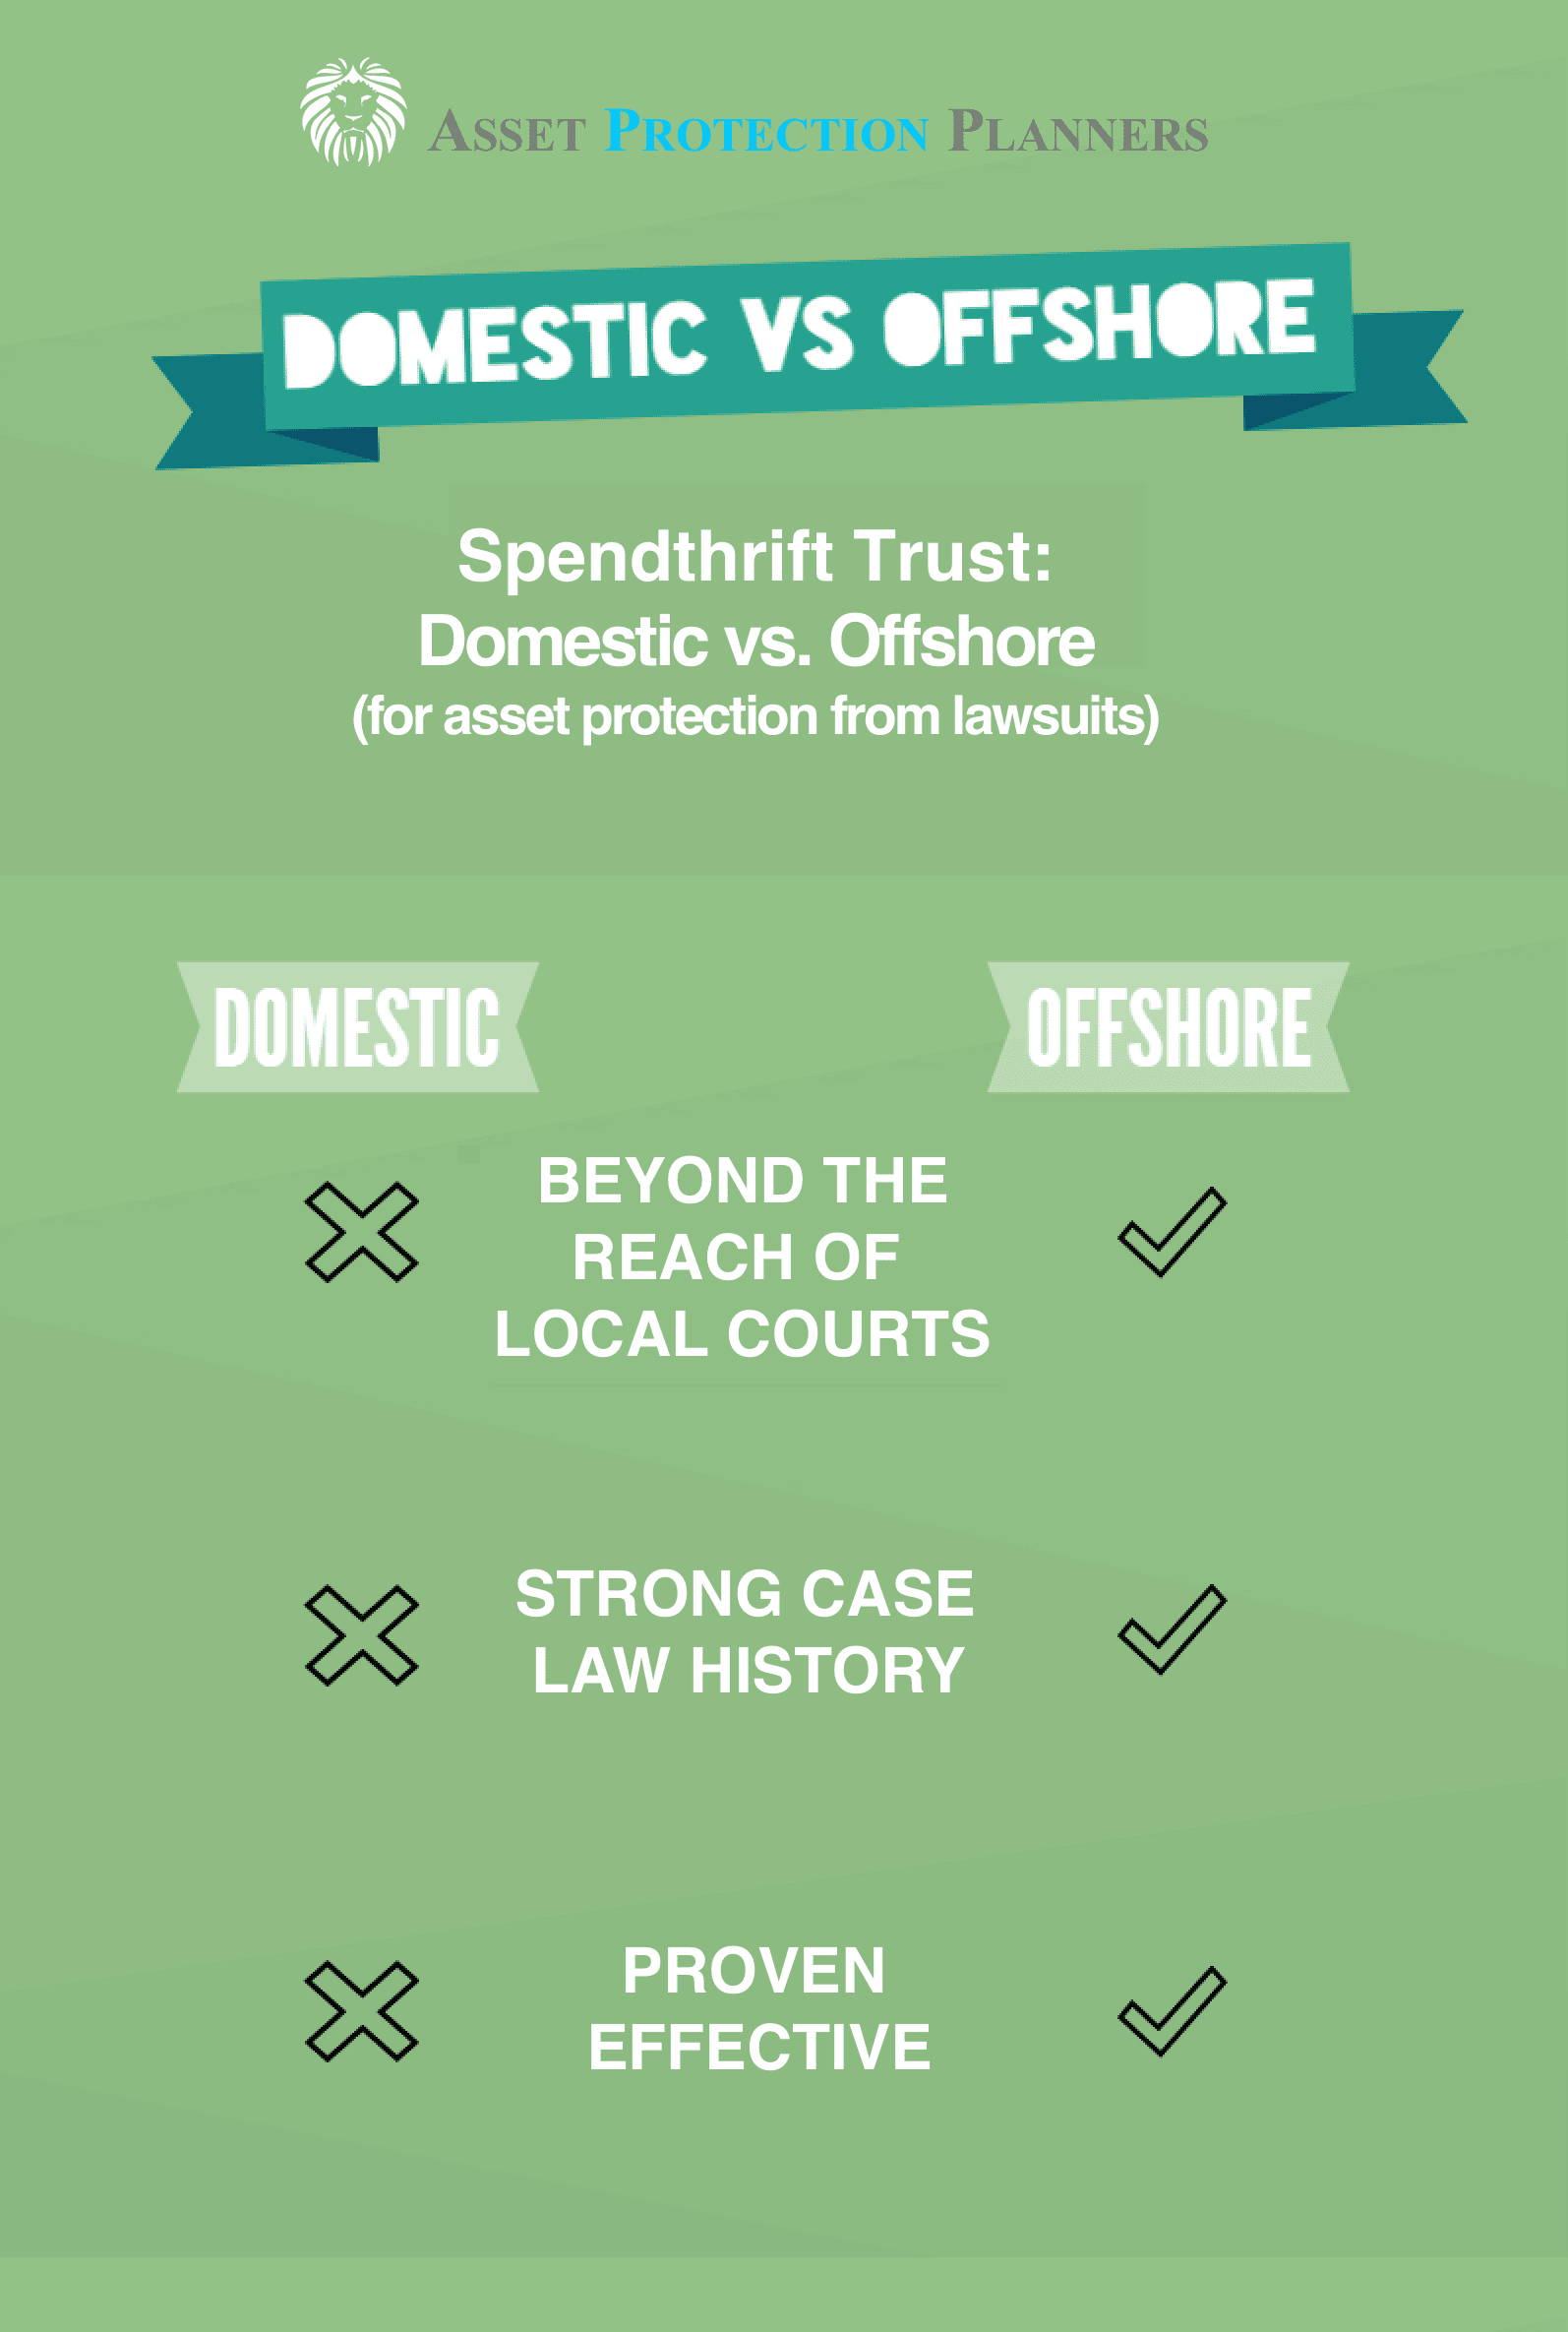 Domestic vs. offshore spendthrift trust